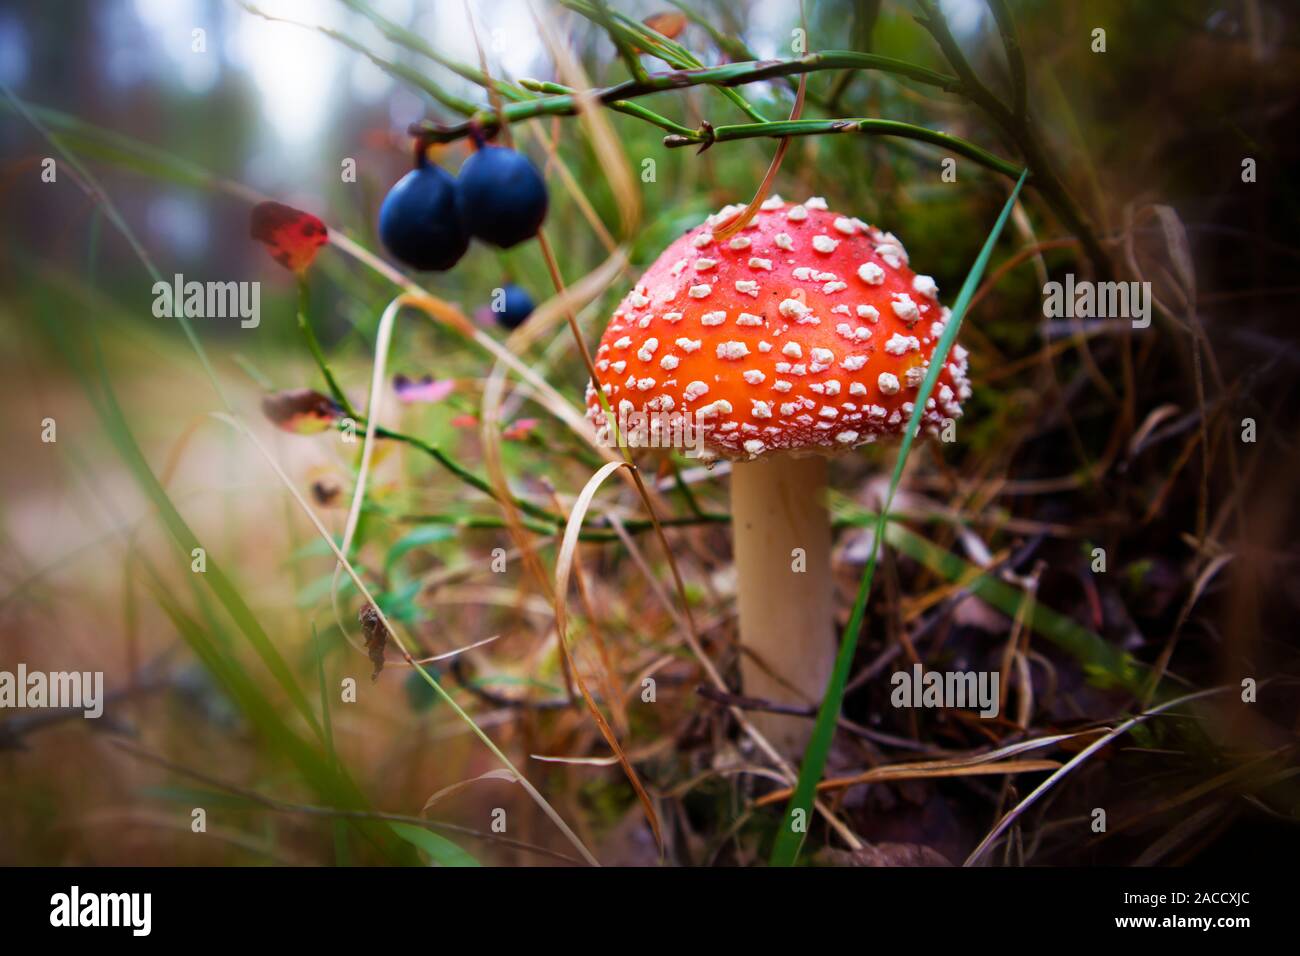 Rosso con macchie bianche di funghi velenosi amanita muscaria crescente in erba leggermente su sfondo sfocato Foto Stock